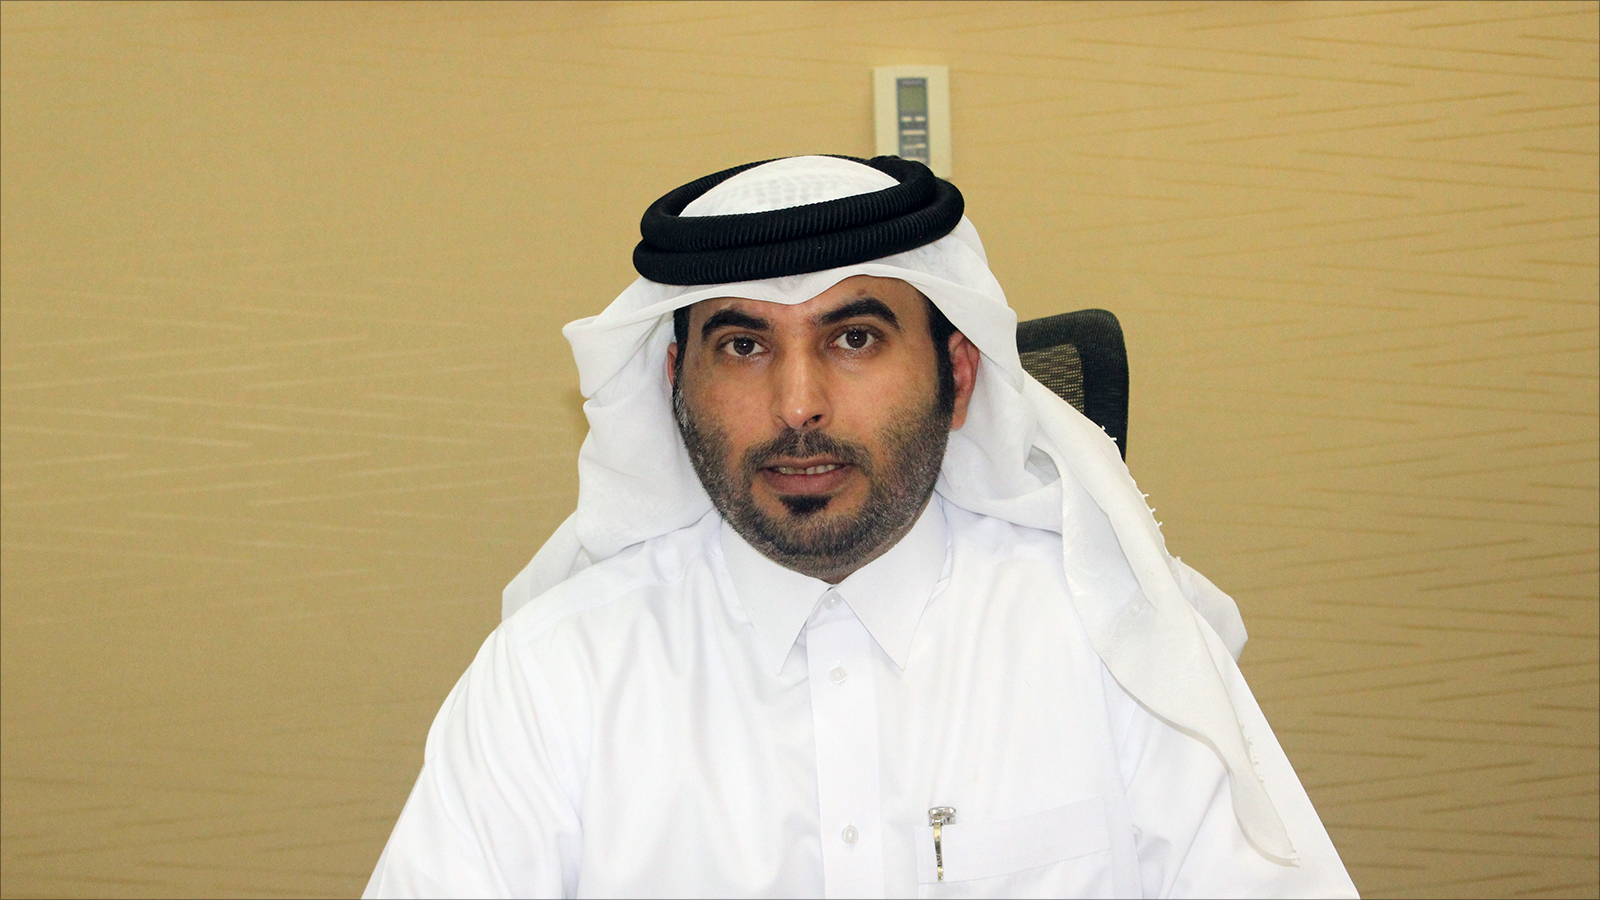 ‪الكعبي: القرار سيصعّب على الجهات التي كانت تحاول تشويه سمعة قطر في هذا المجال؛ مواصلة مساعيها‬ (الجزيرة)